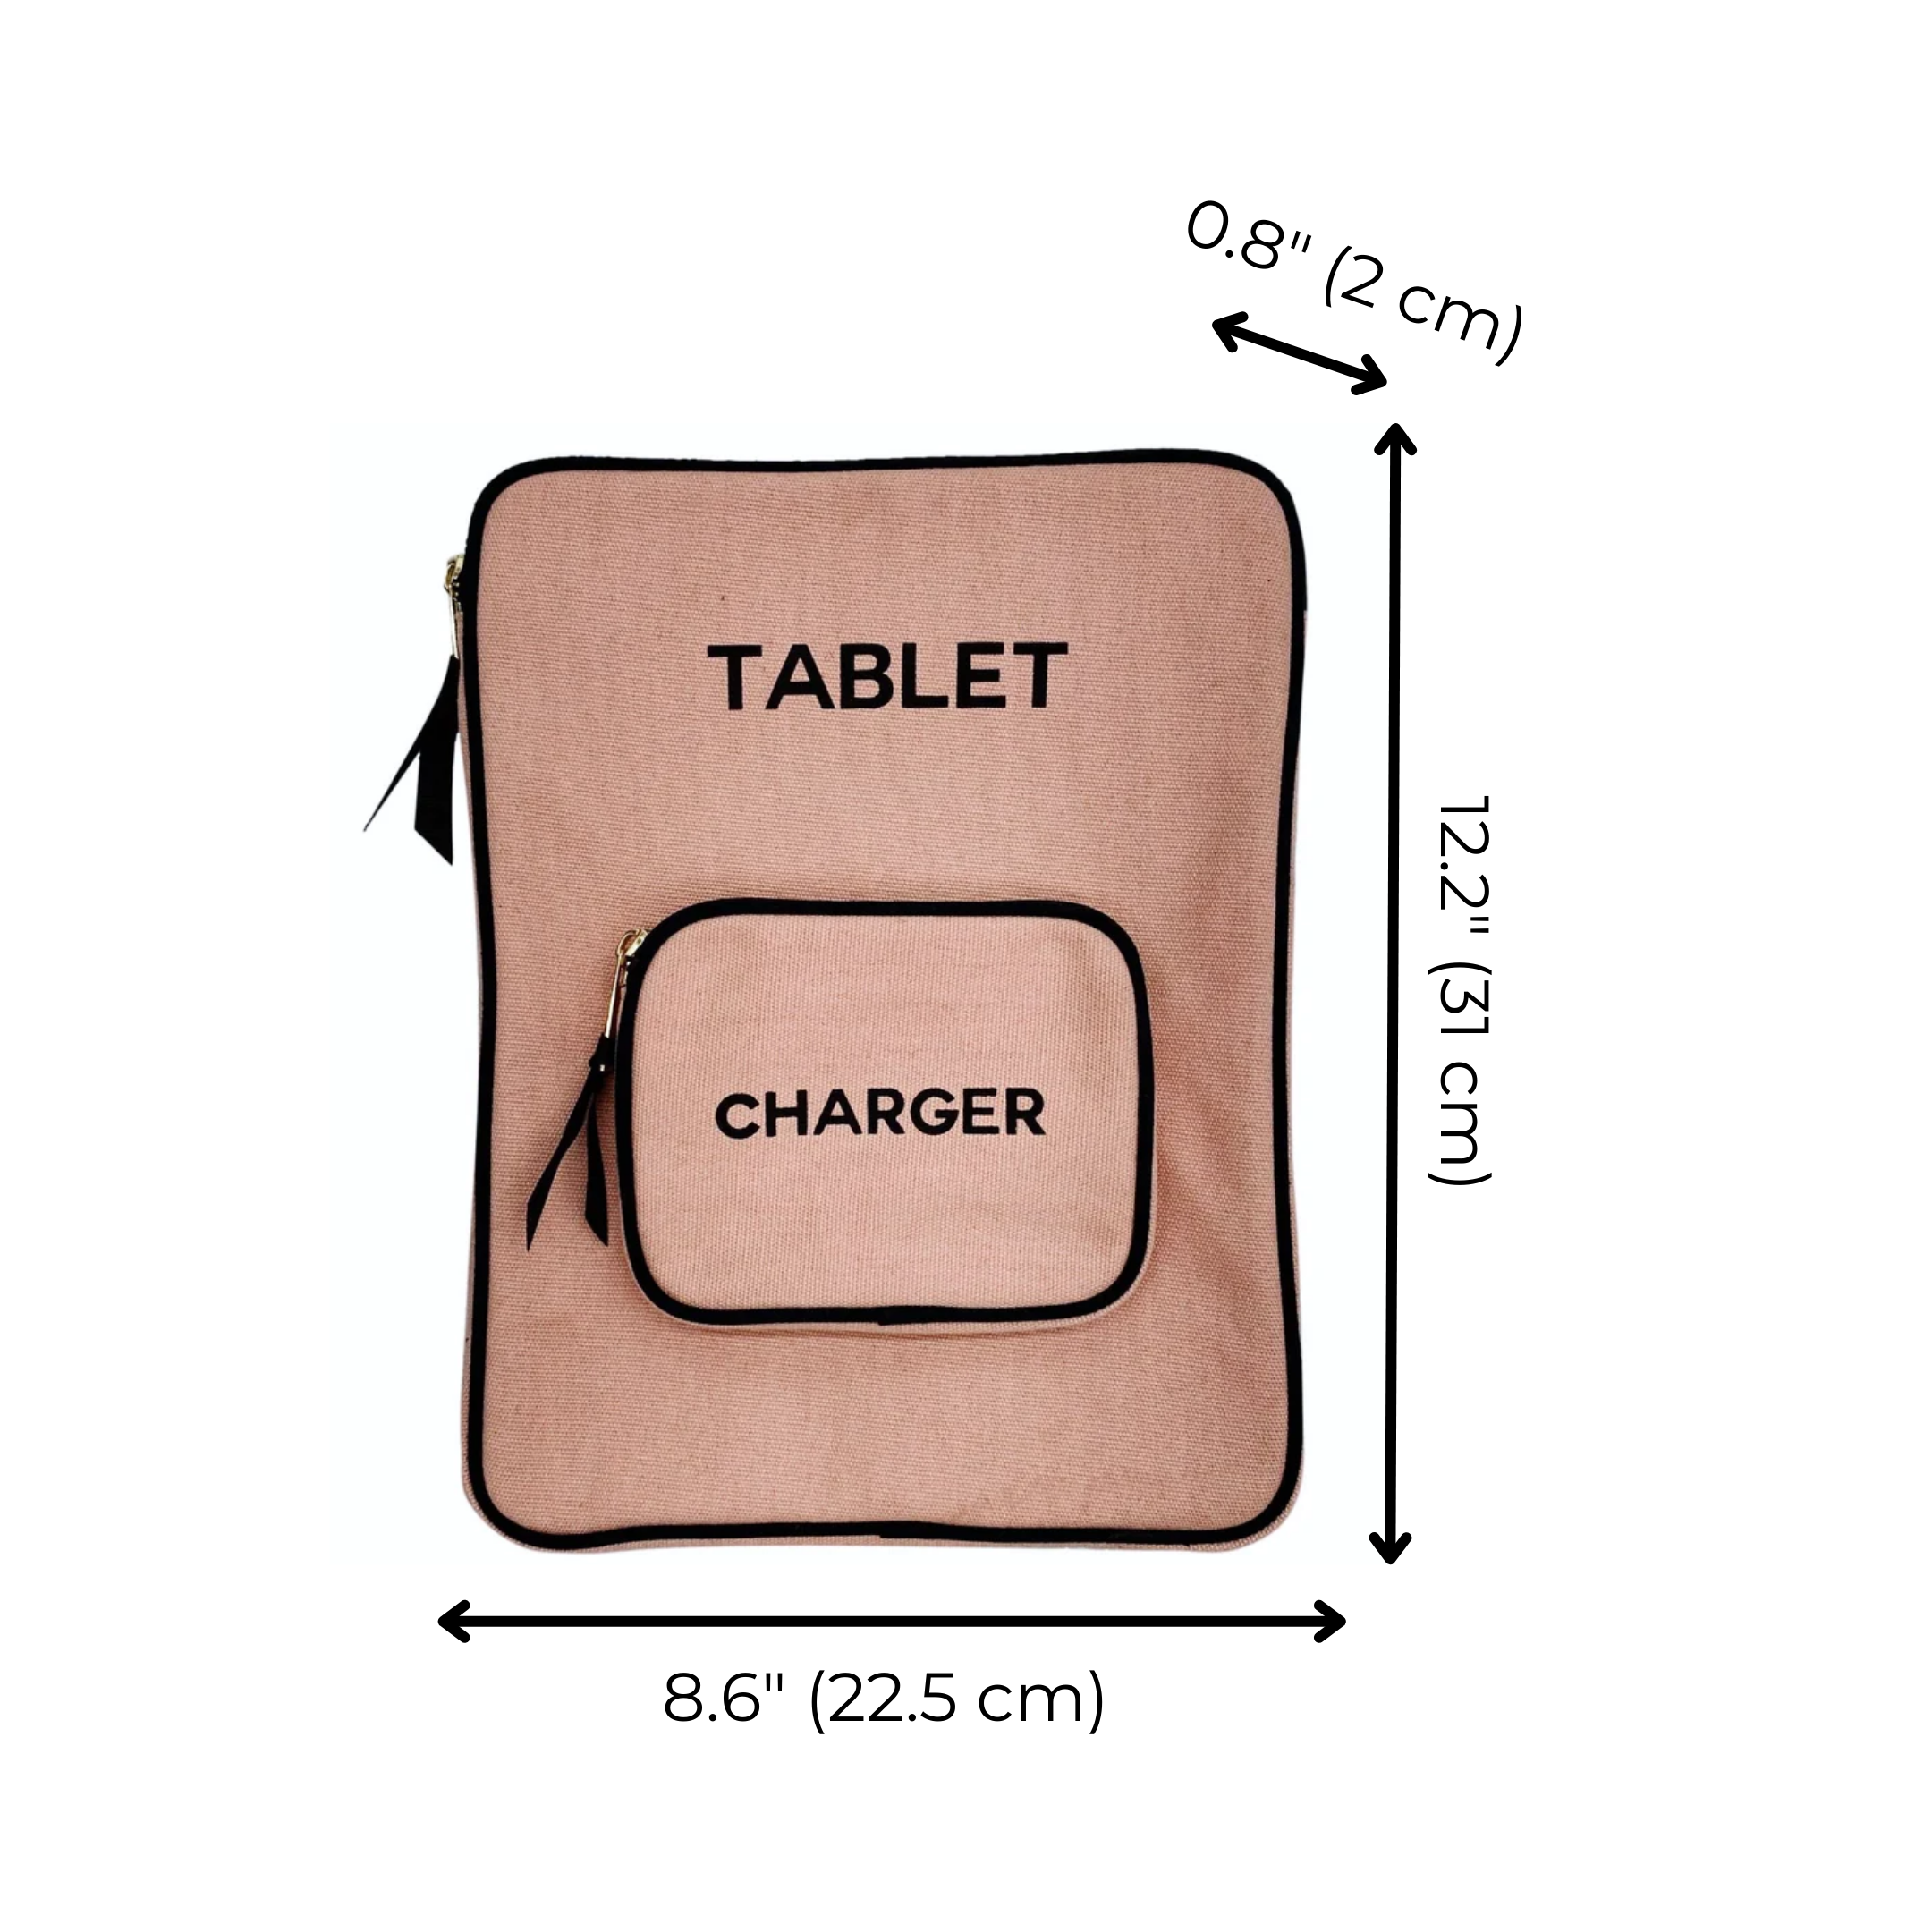 Tablet Case 11", Charger Pocket, Pink/Blush | Bag-all